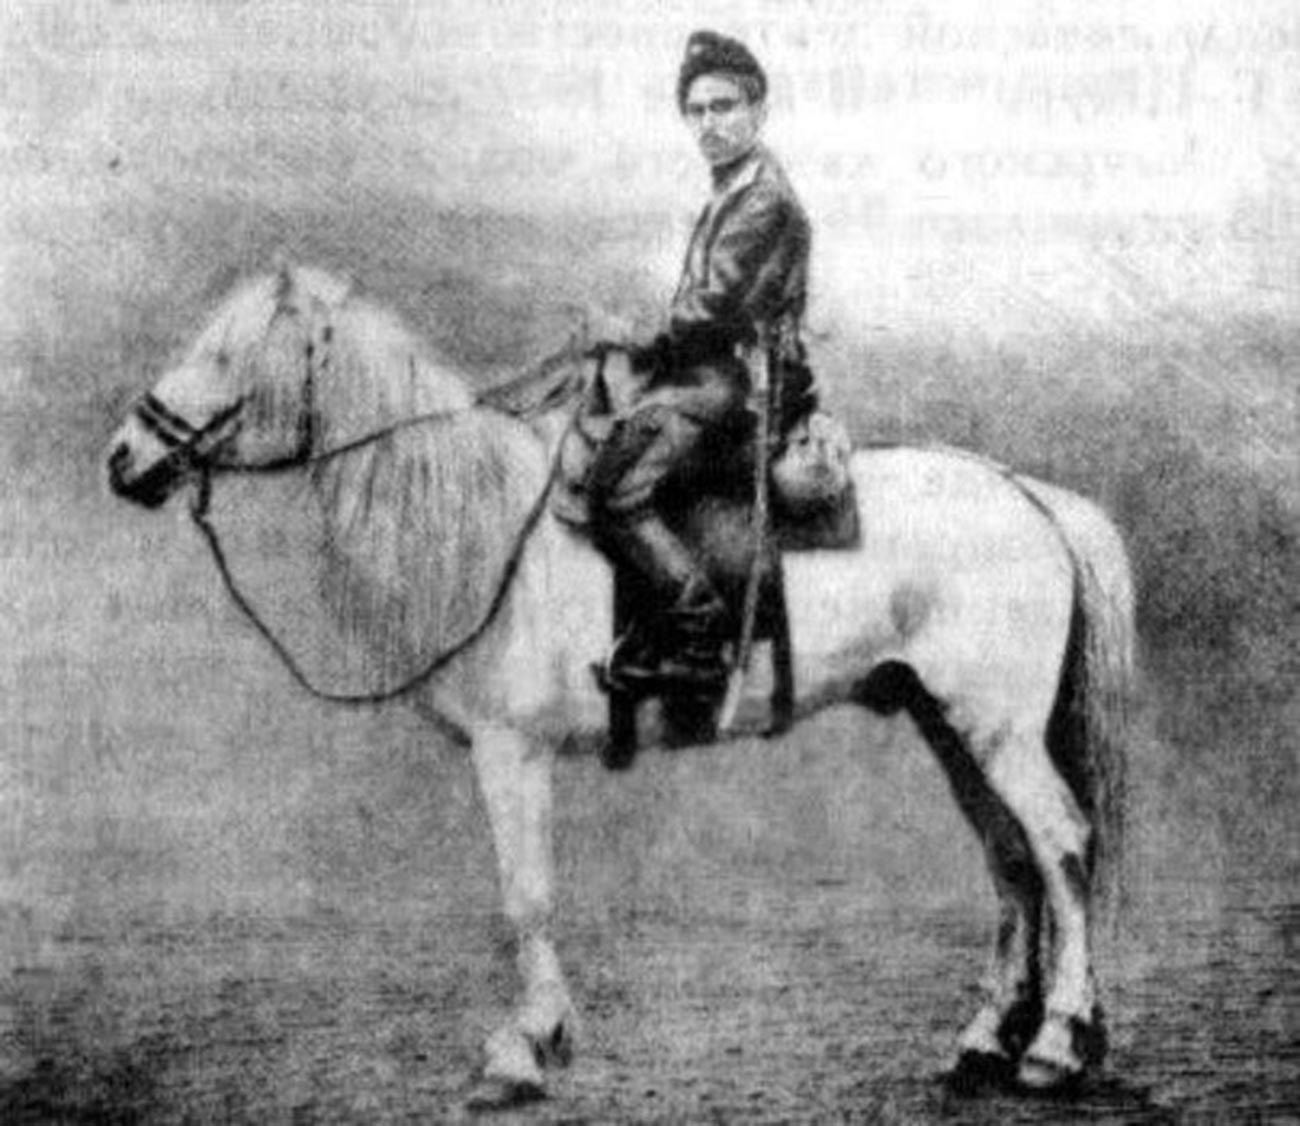 Peshkov on his horse.